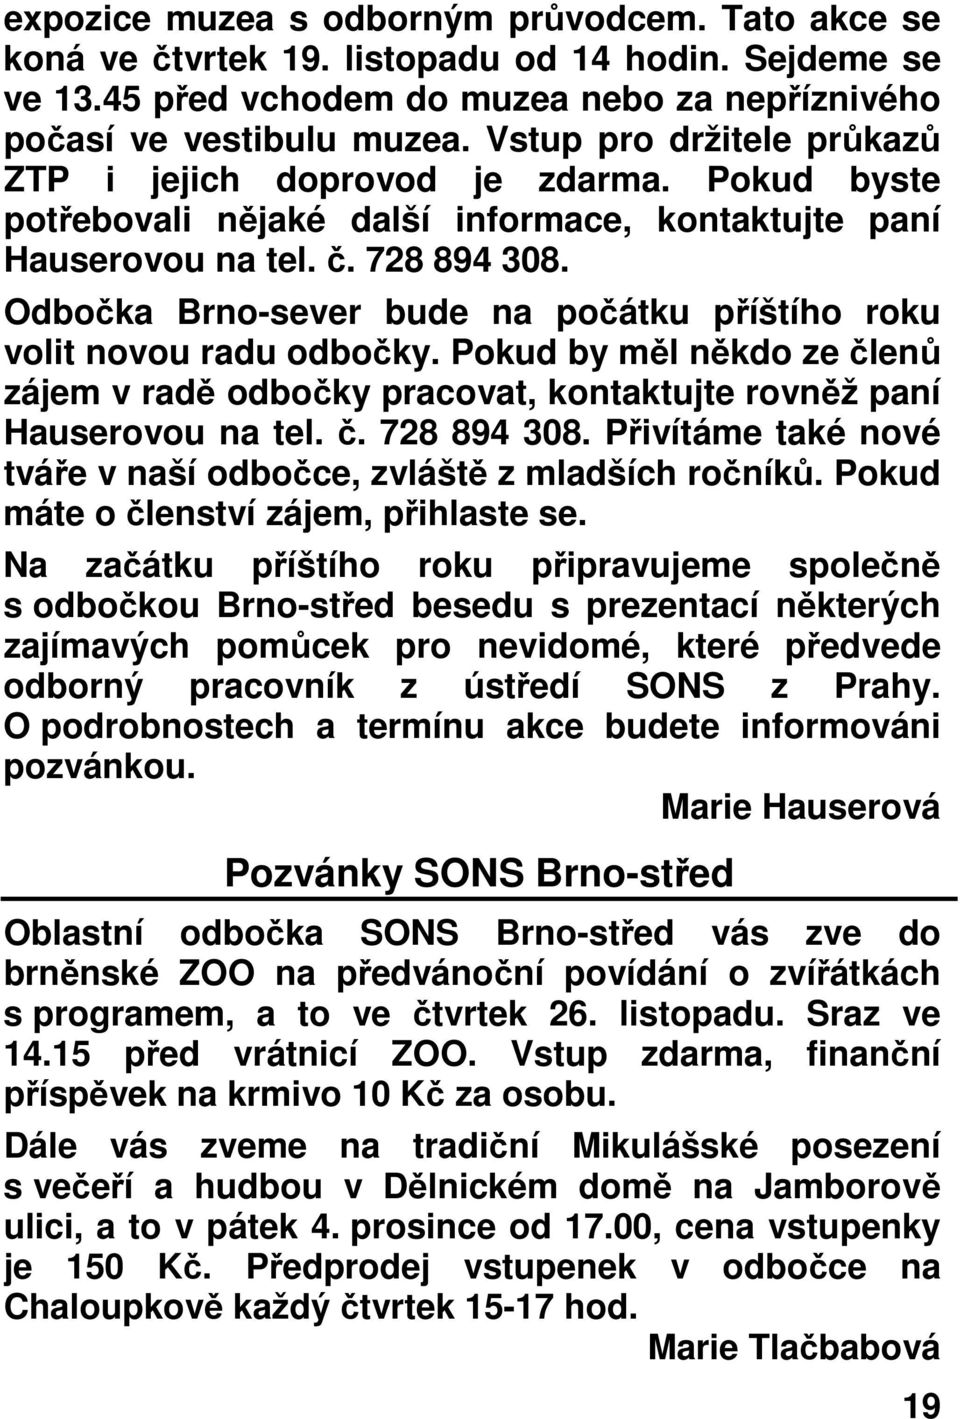 Odbočka Brno-sever bude na počátku příštího roku volit novou radu odbočky. Pokud by měl někdo ze členů zájem v radě odbočky pracovat, kontaktujte rovněž paní Hauserovou na tel. č. 728 894 308.